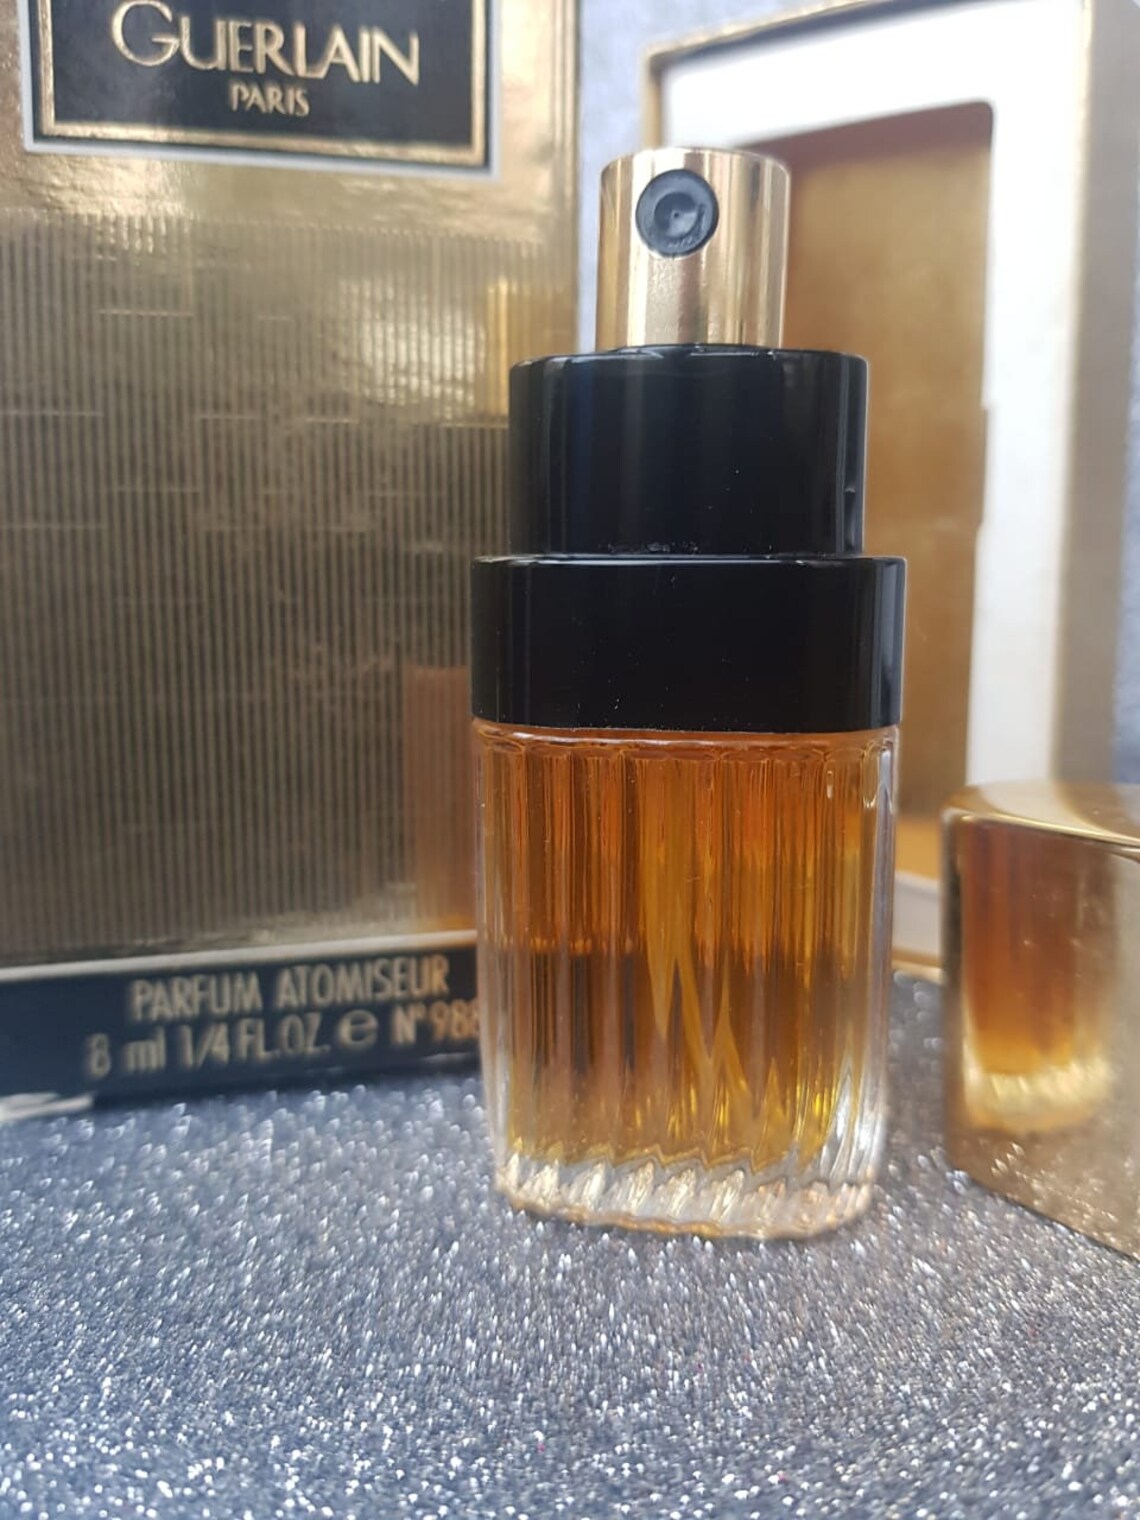 Vol de Nuit Guerlain 8 ml. Perfume Vintage 1986 | Etsy